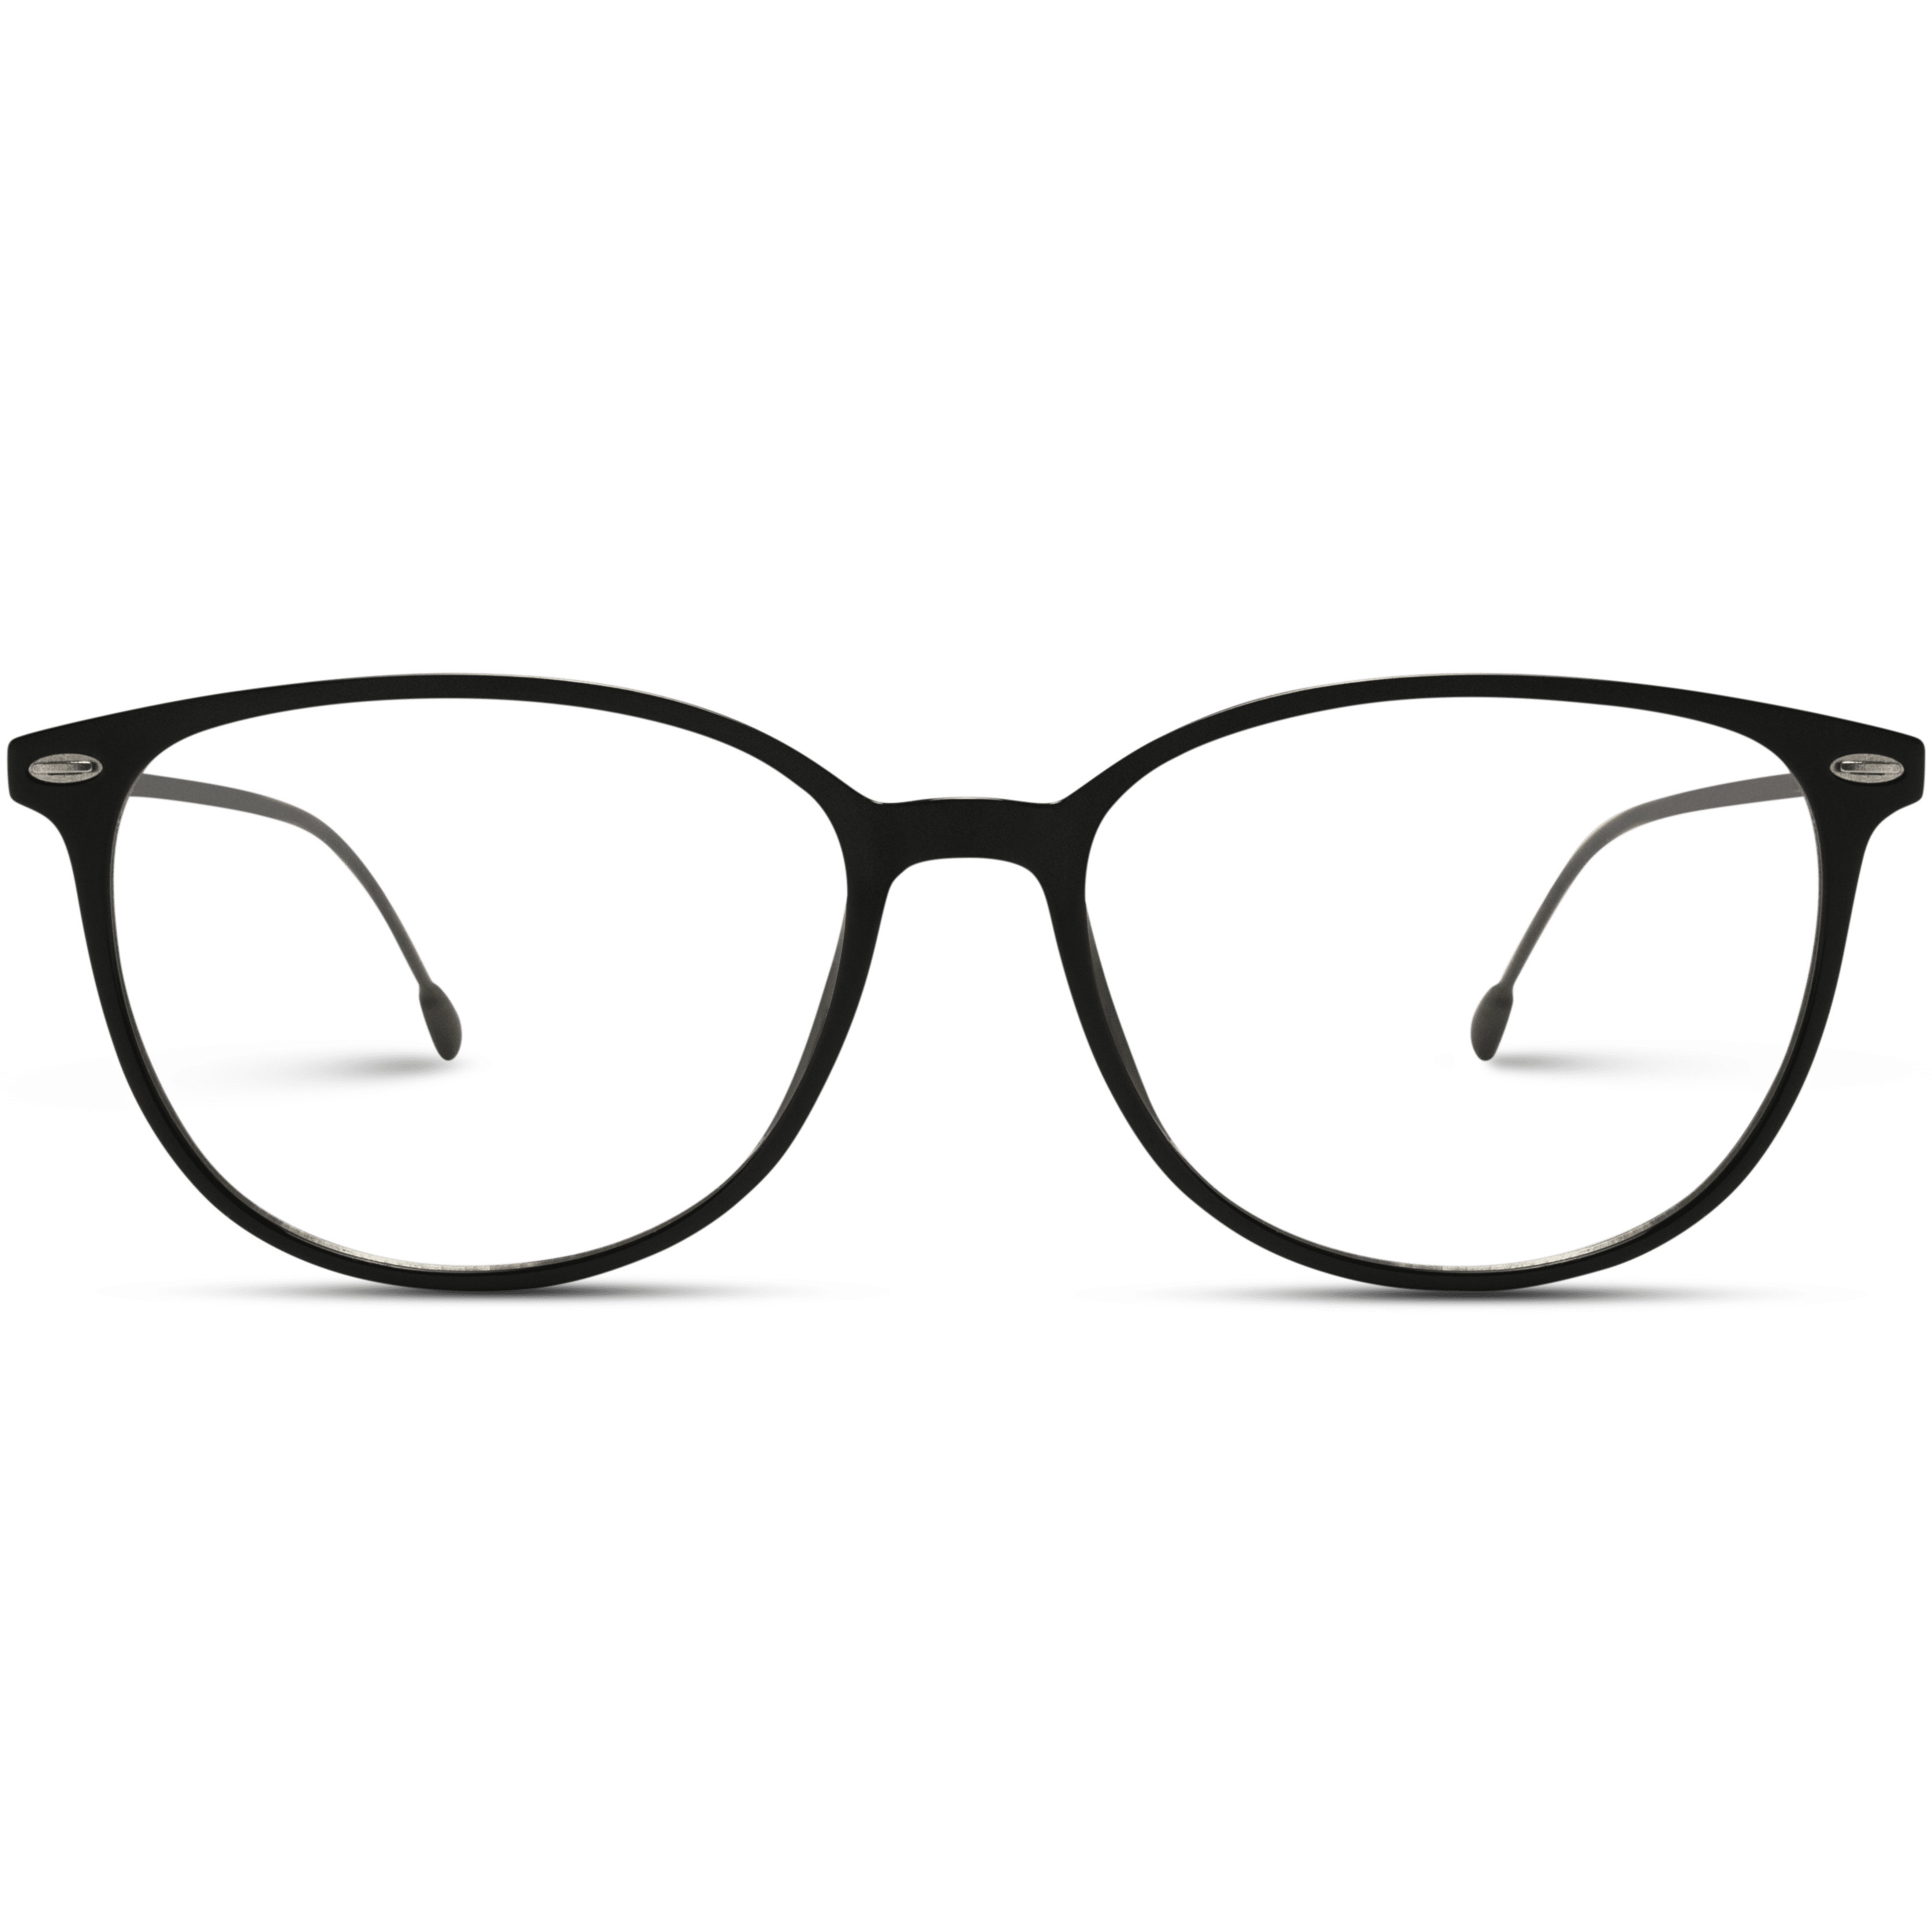 Wearme Pro Premium Elegant Blue Light Glasses Cat Eye Oval Frame Design For Women